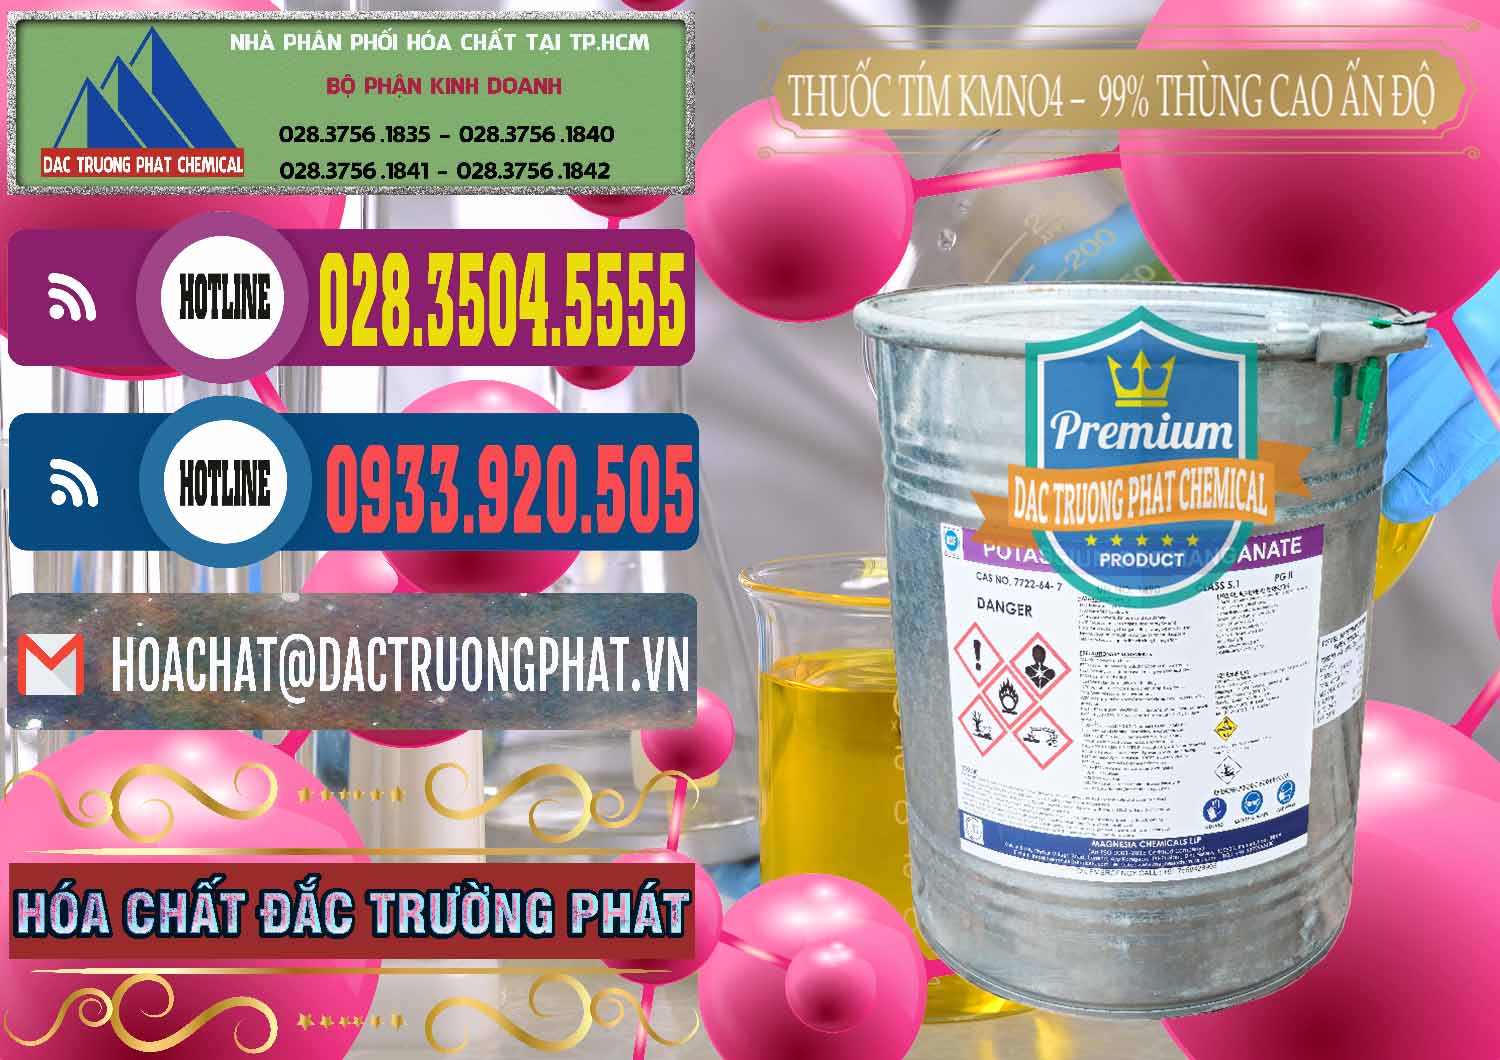 Đơn vị chuyên bán và cung ứng Thuốc Tím - KMNO4 Thùng Cao 99% Magnesia Chemicals Ấn Độ India - 0164 - Cung cấp và phân phối hóa chất tại TP.HCM - muabanhoachat.com.vn